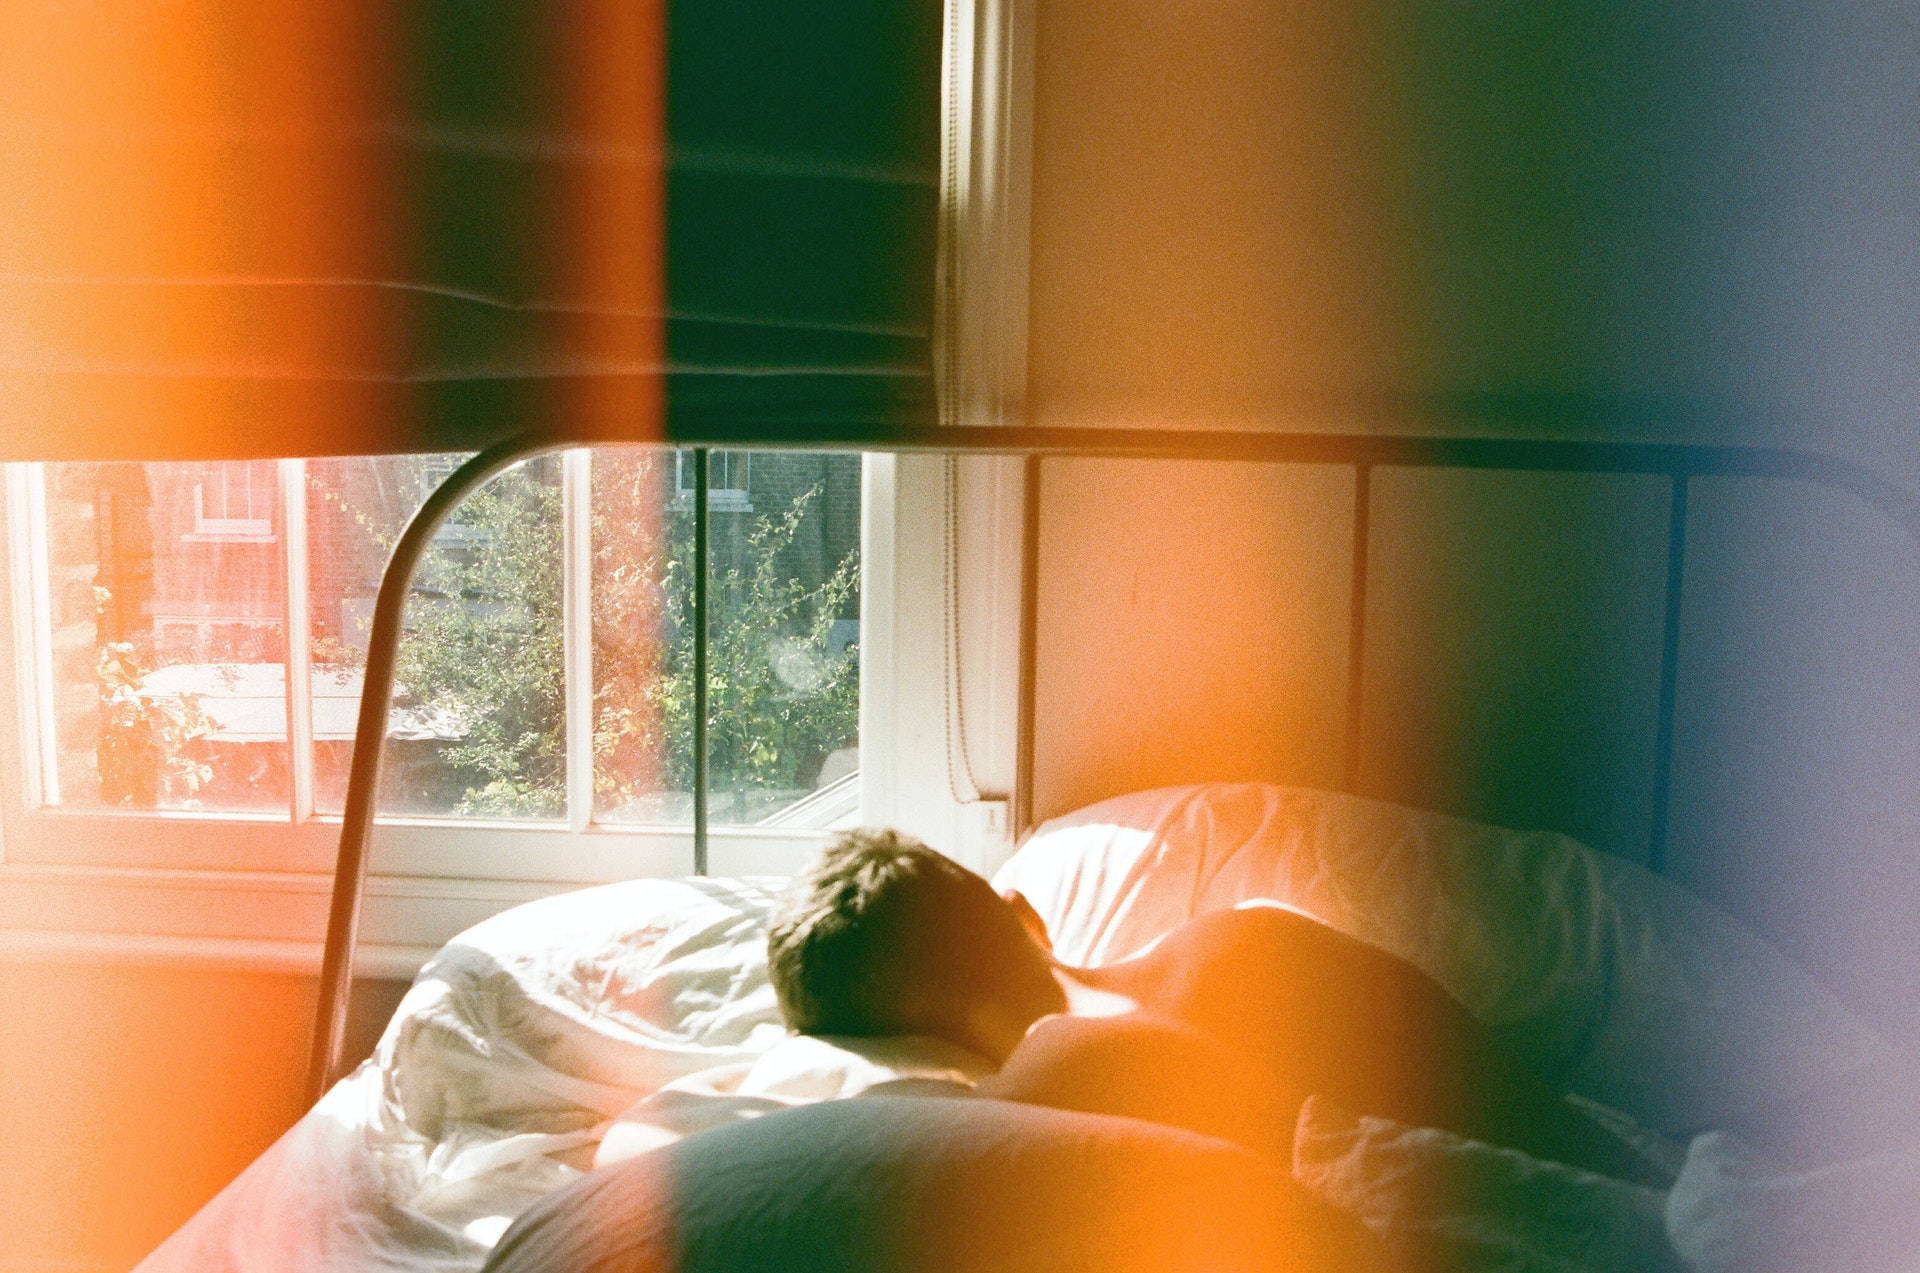 Mann liegt auf einem Bett zu einem offenen Fenster gerichtet